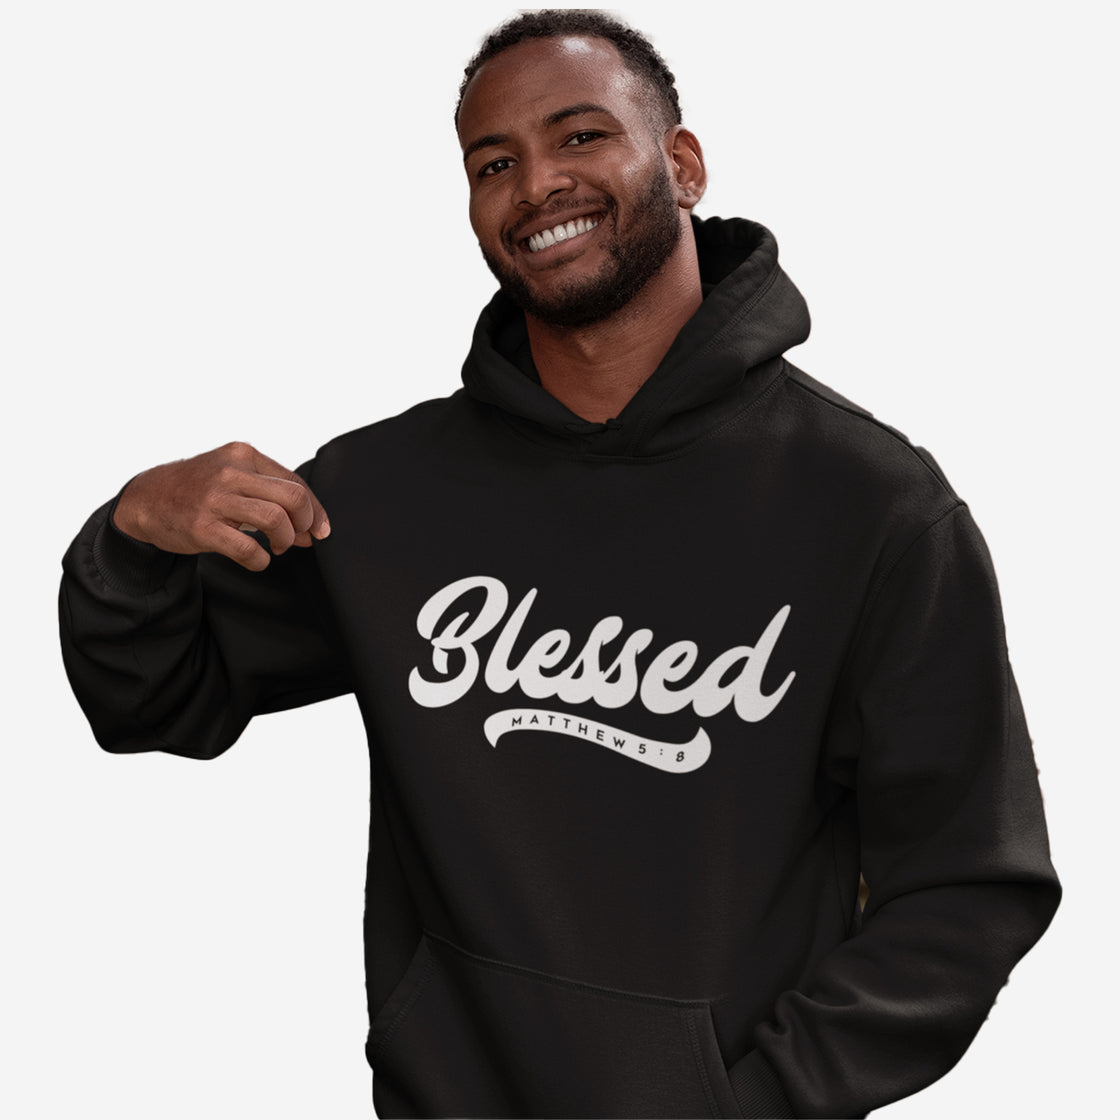 Blessed - Hoodies